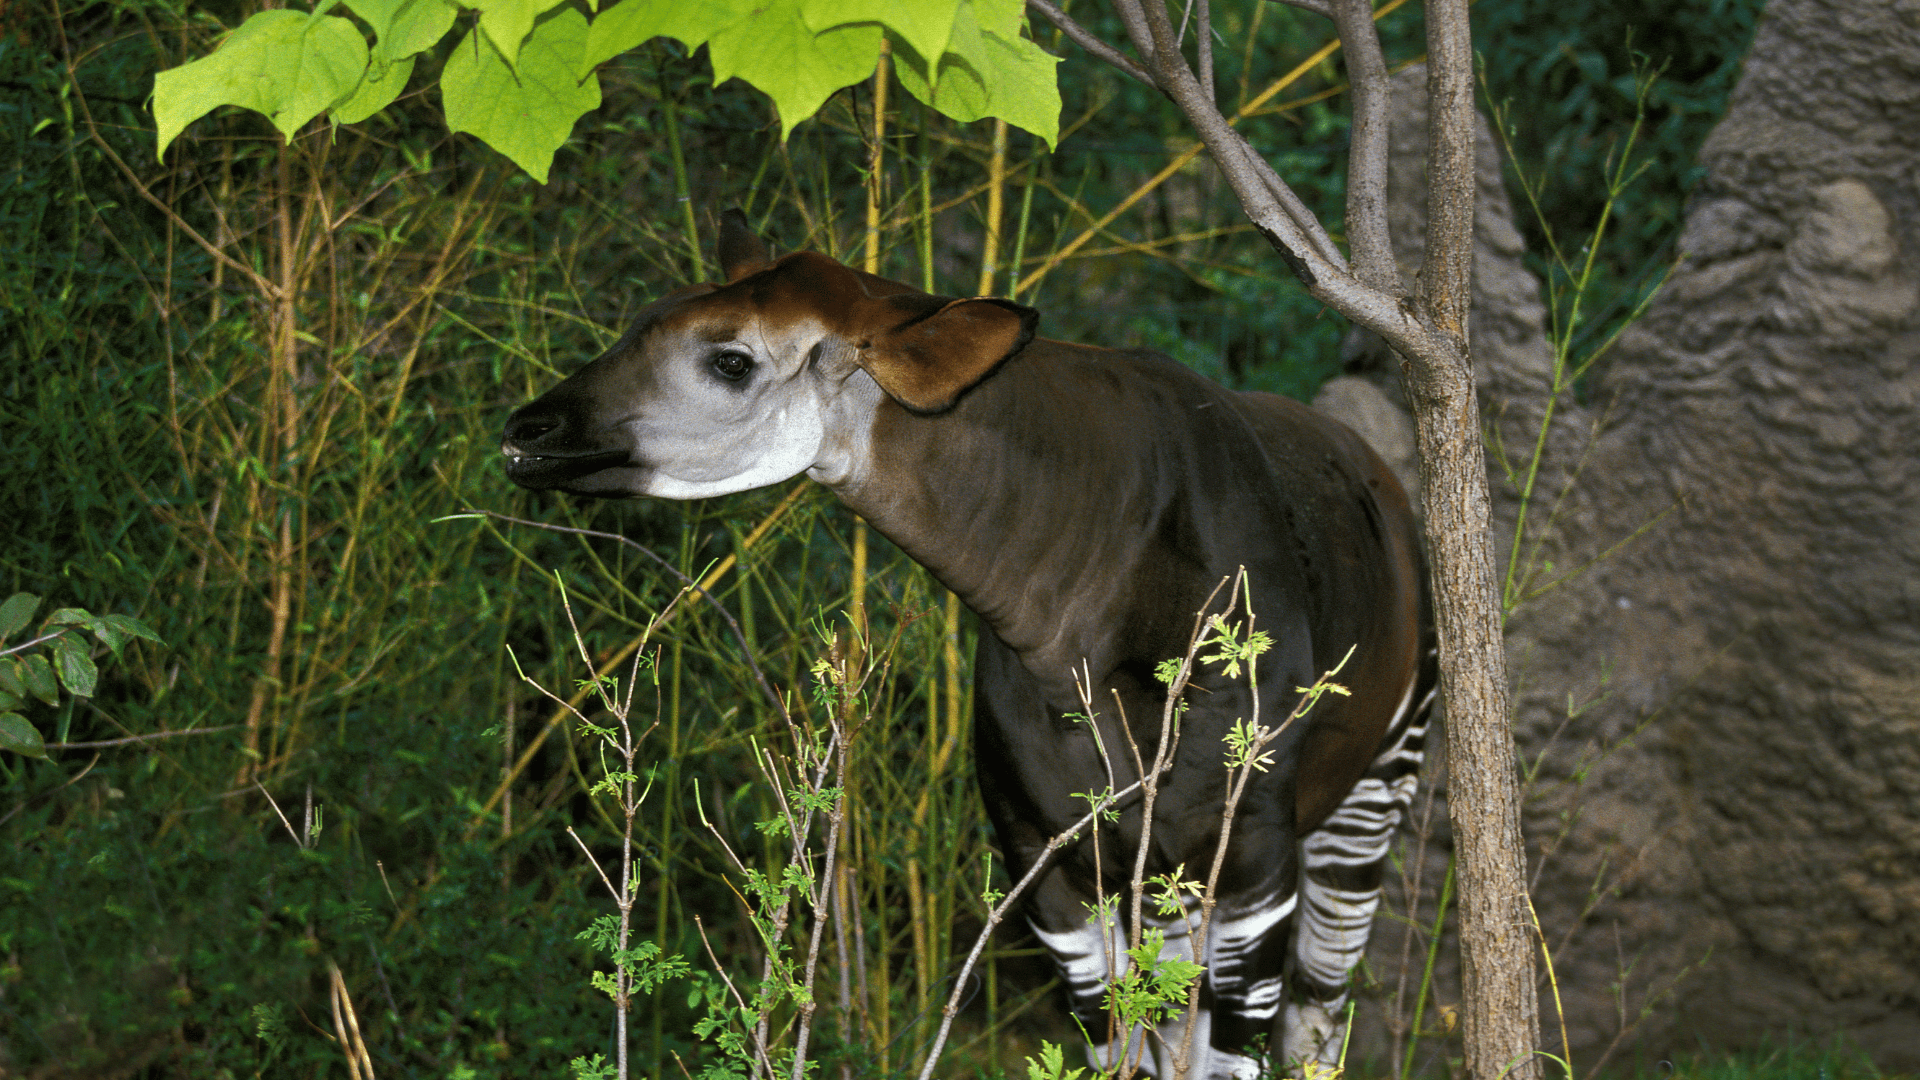 A close up of an endangered Okapi